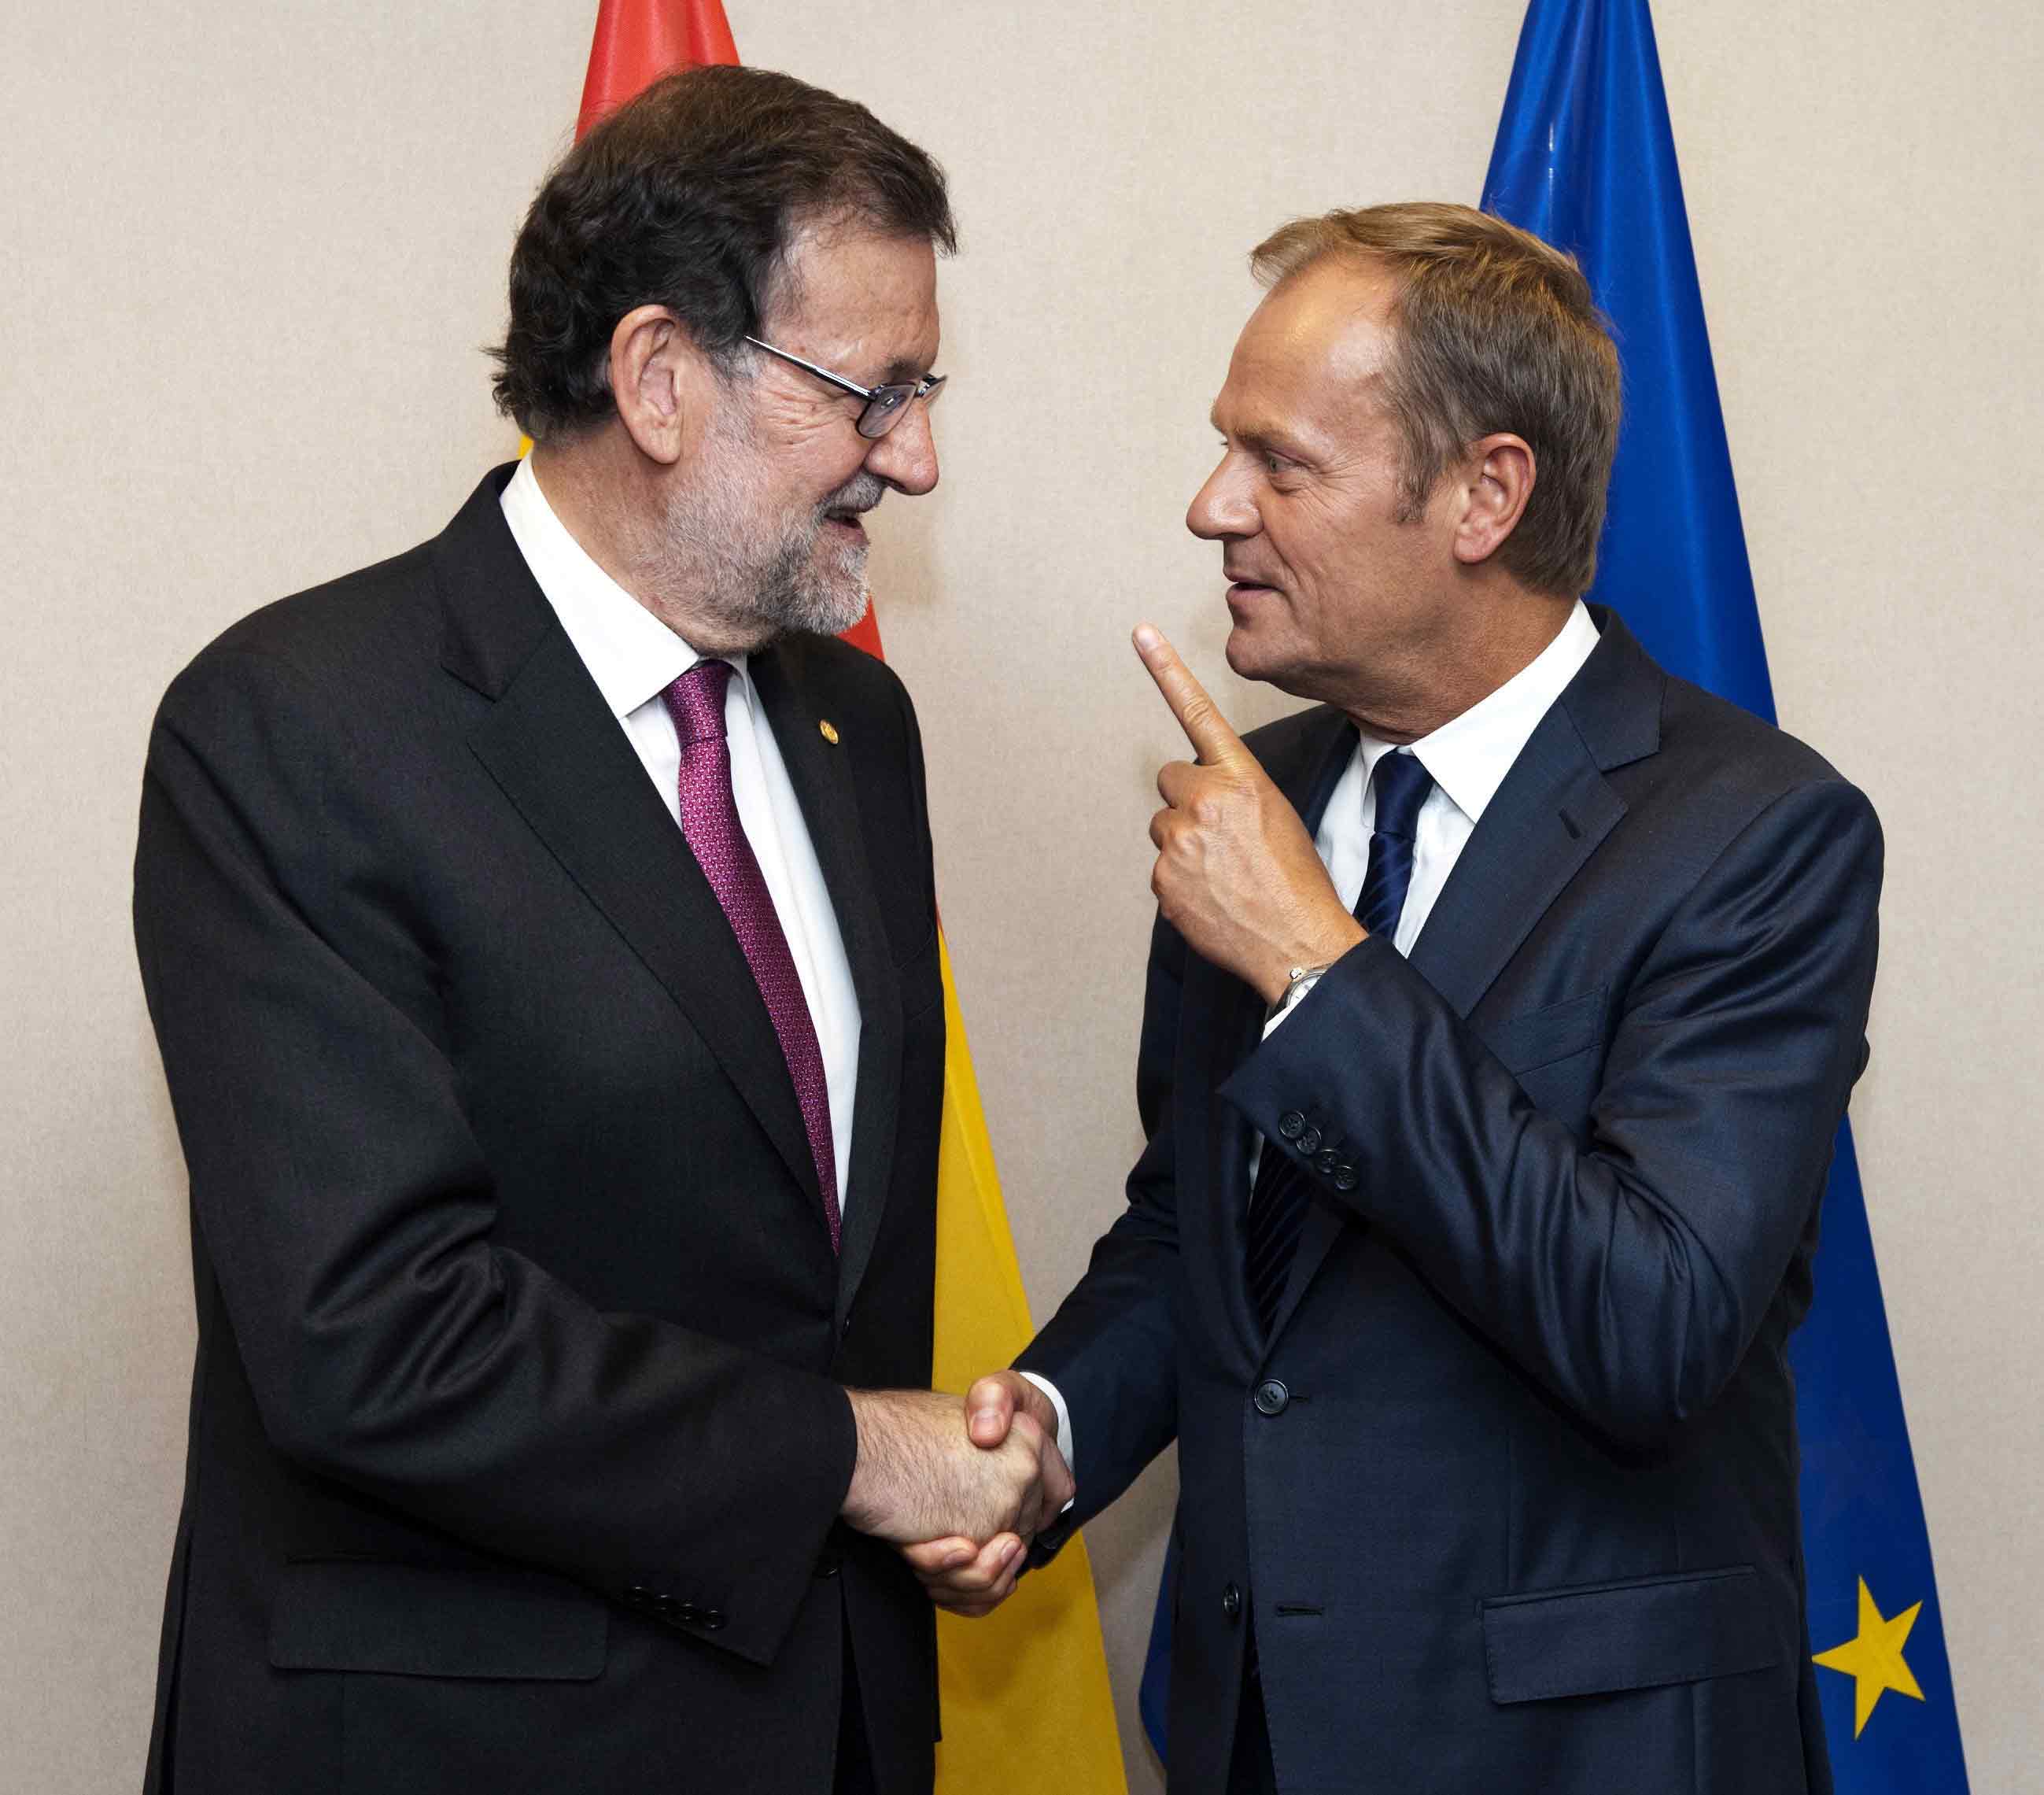 El presidente del Gobierno, Mariano Rajoy (i) saluda al presidente del Consejo Europeo, Donald Tusk.